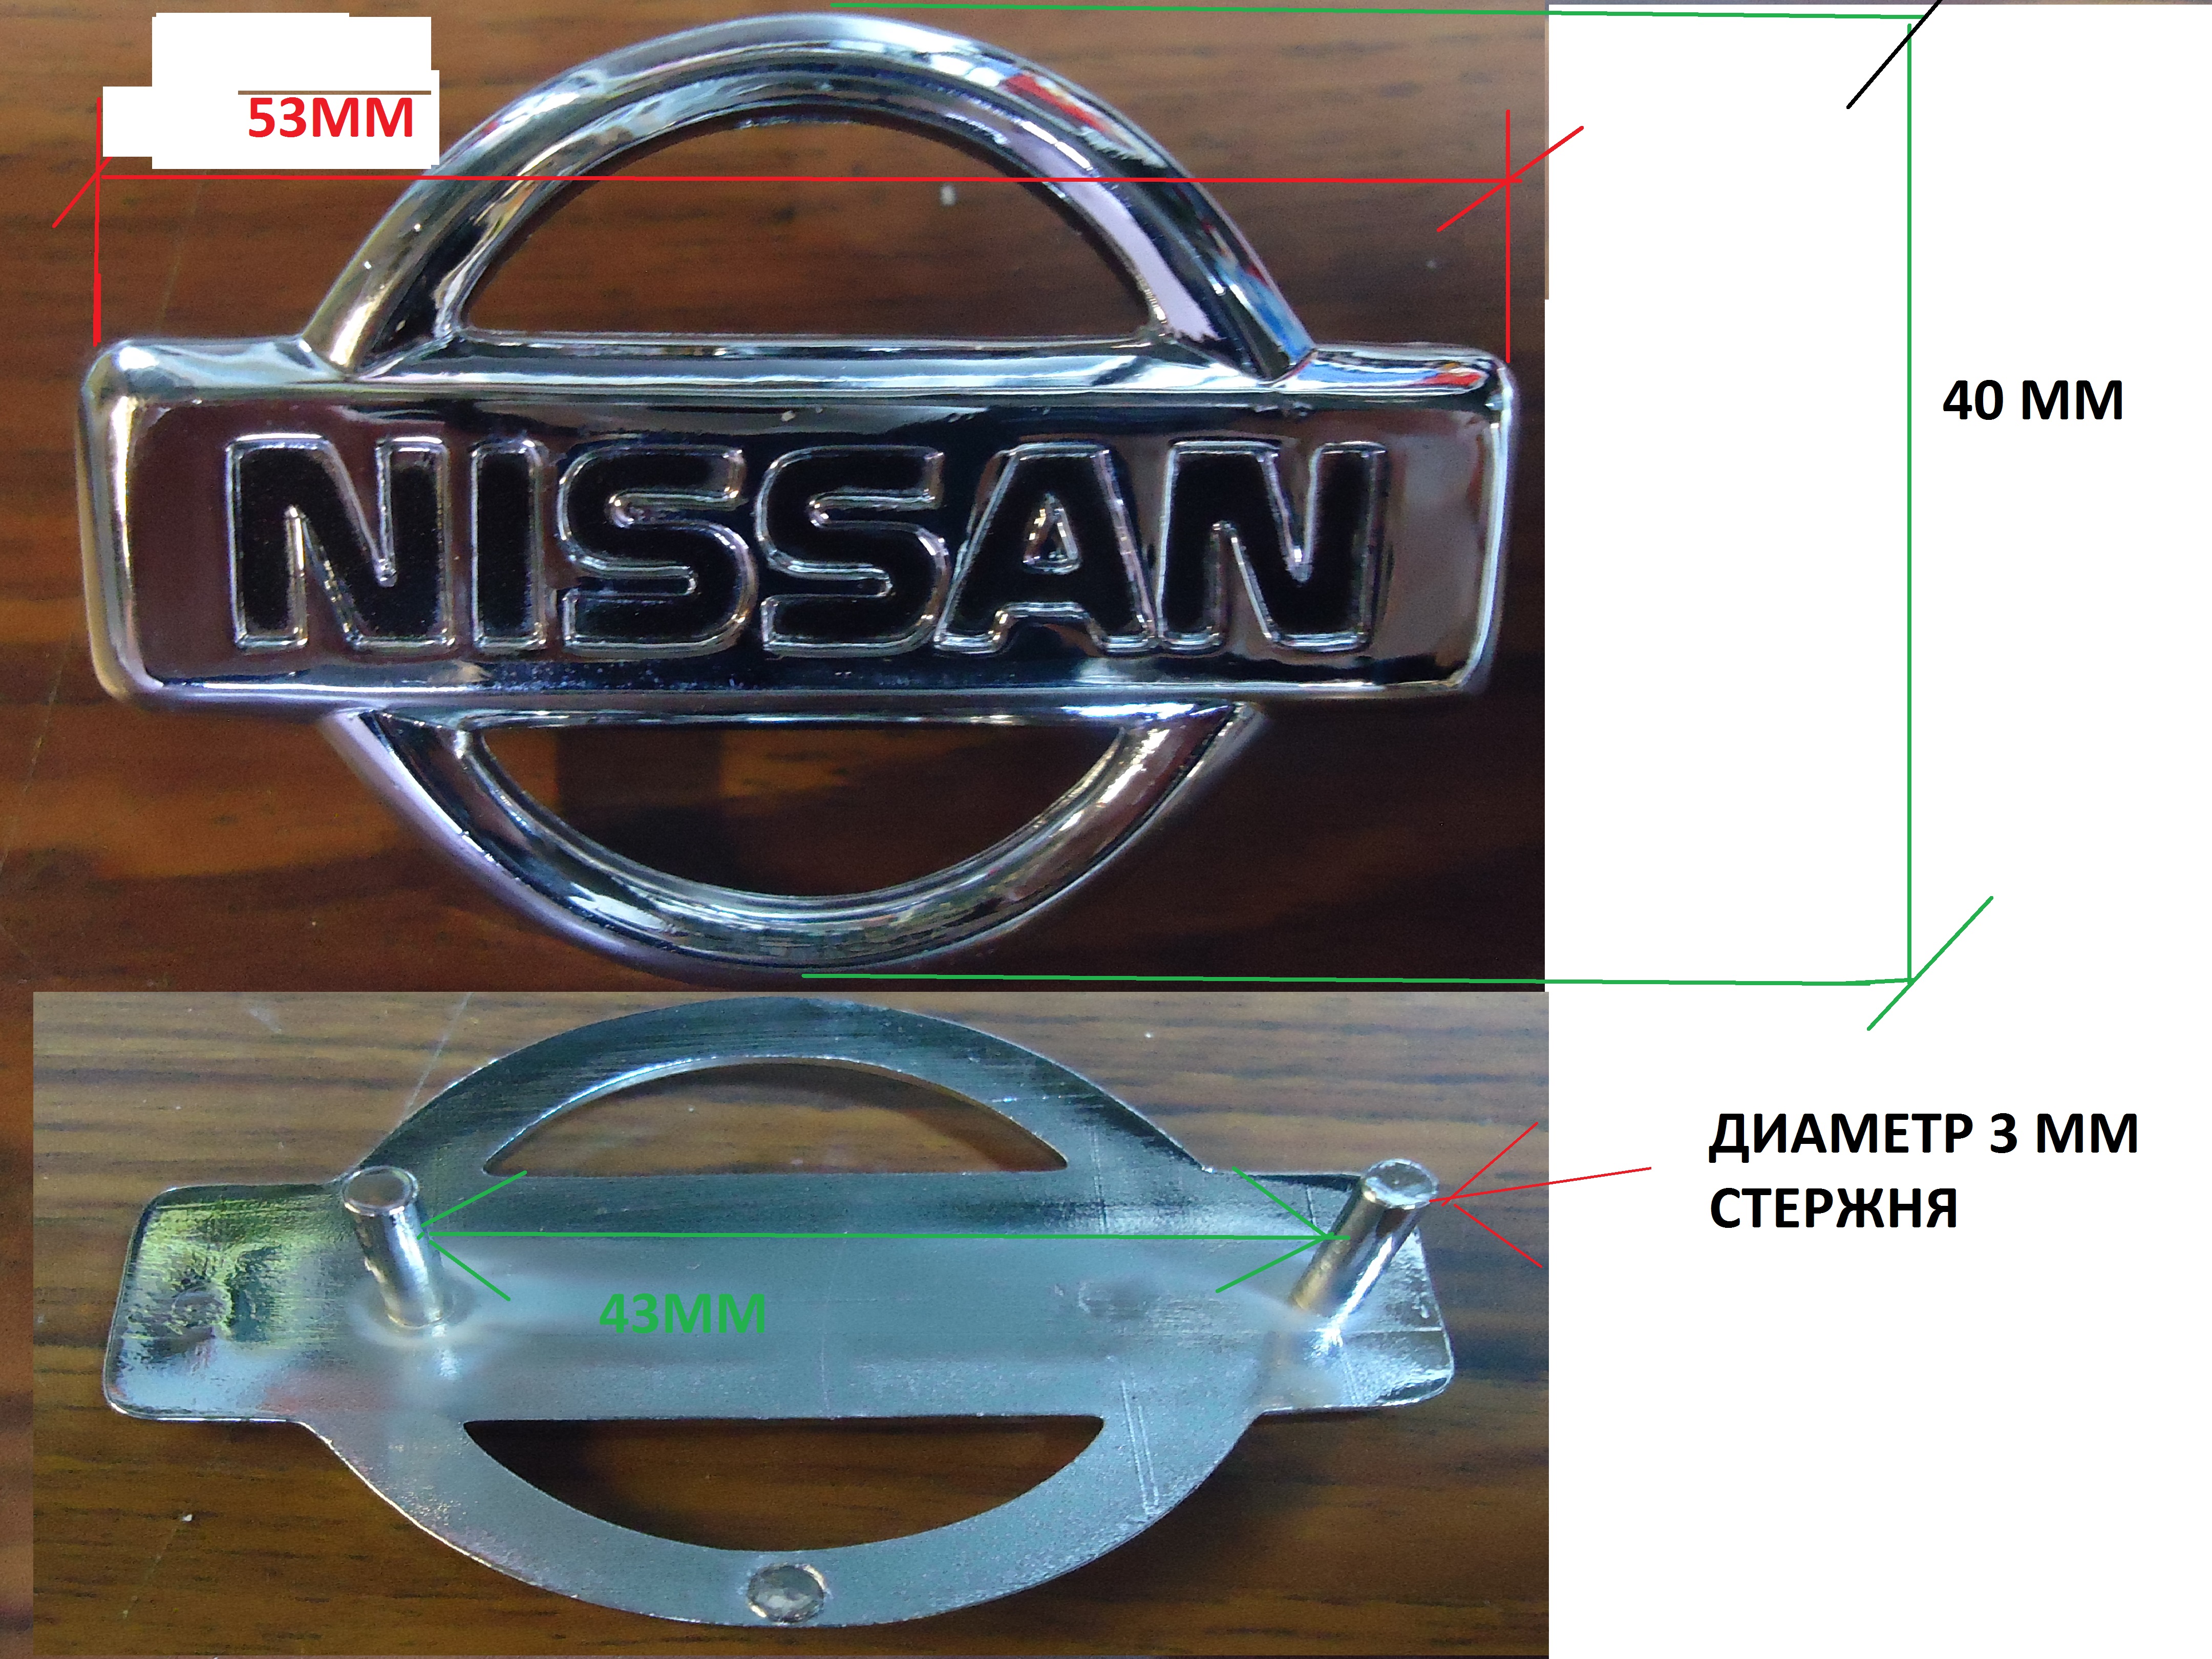 Эмблема NISSAN №39 40 мм